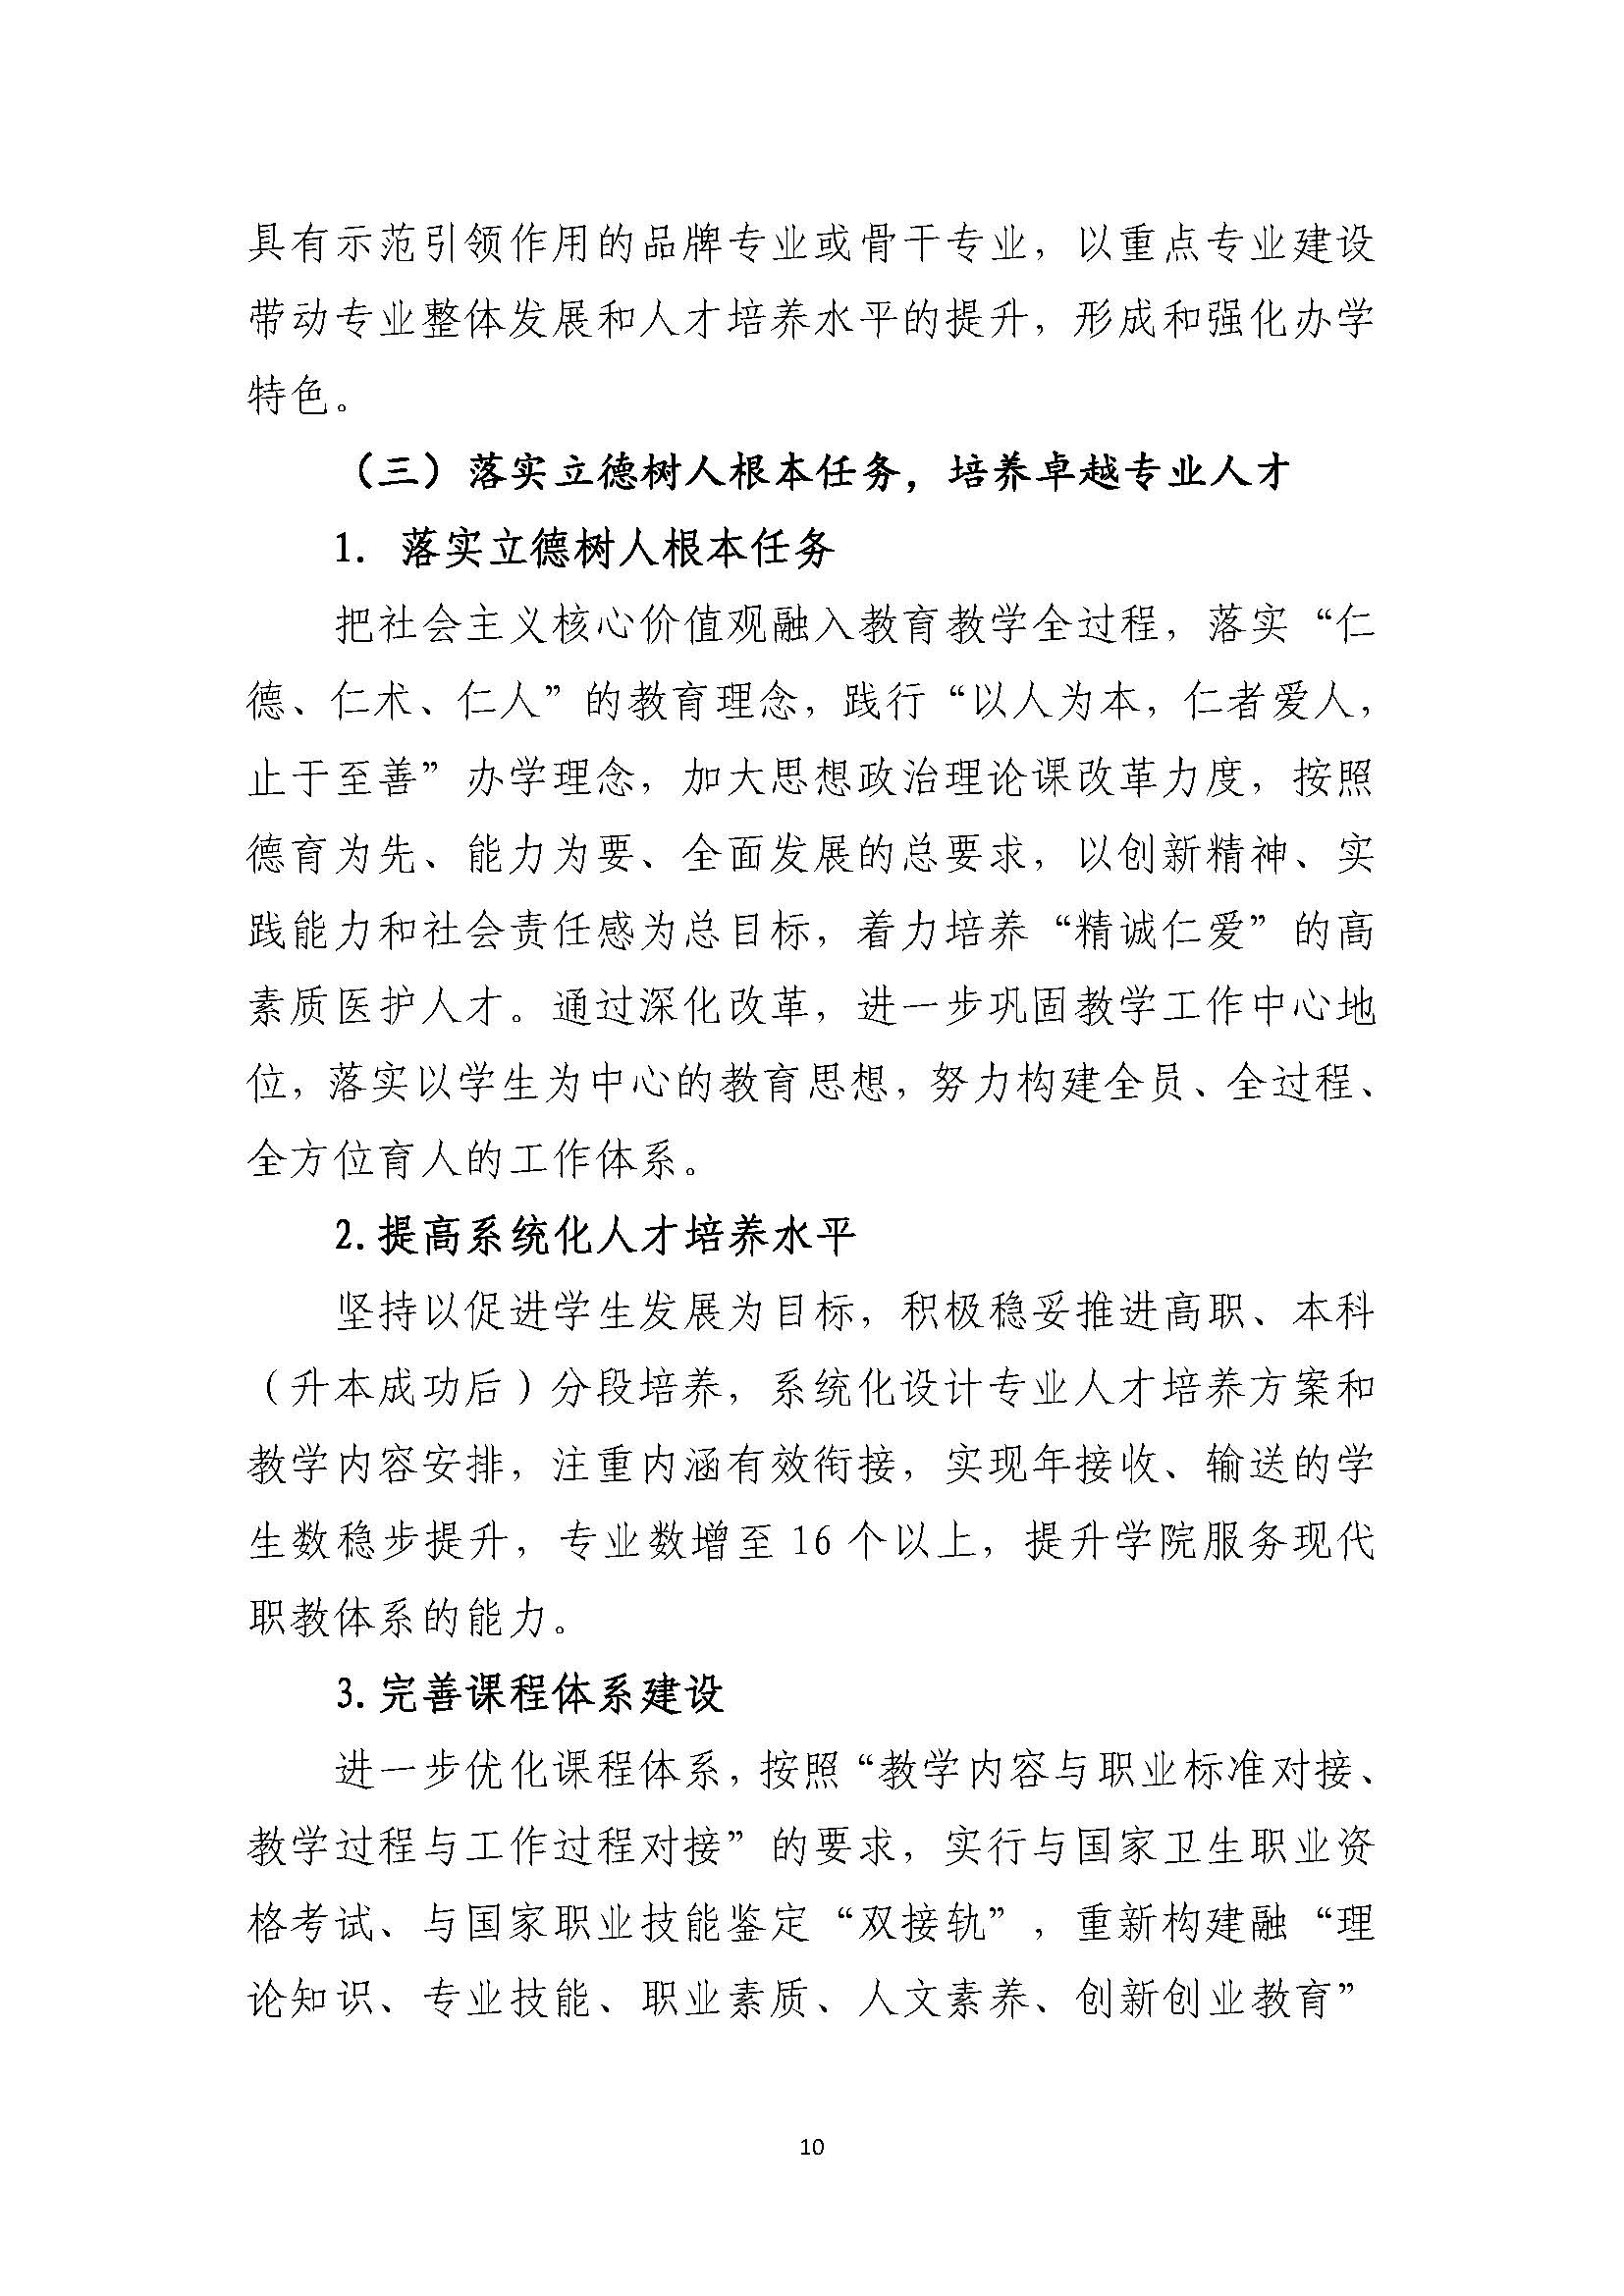 郑州黄河护理职业学院2021-2025年发展规划_页面_10.jpg